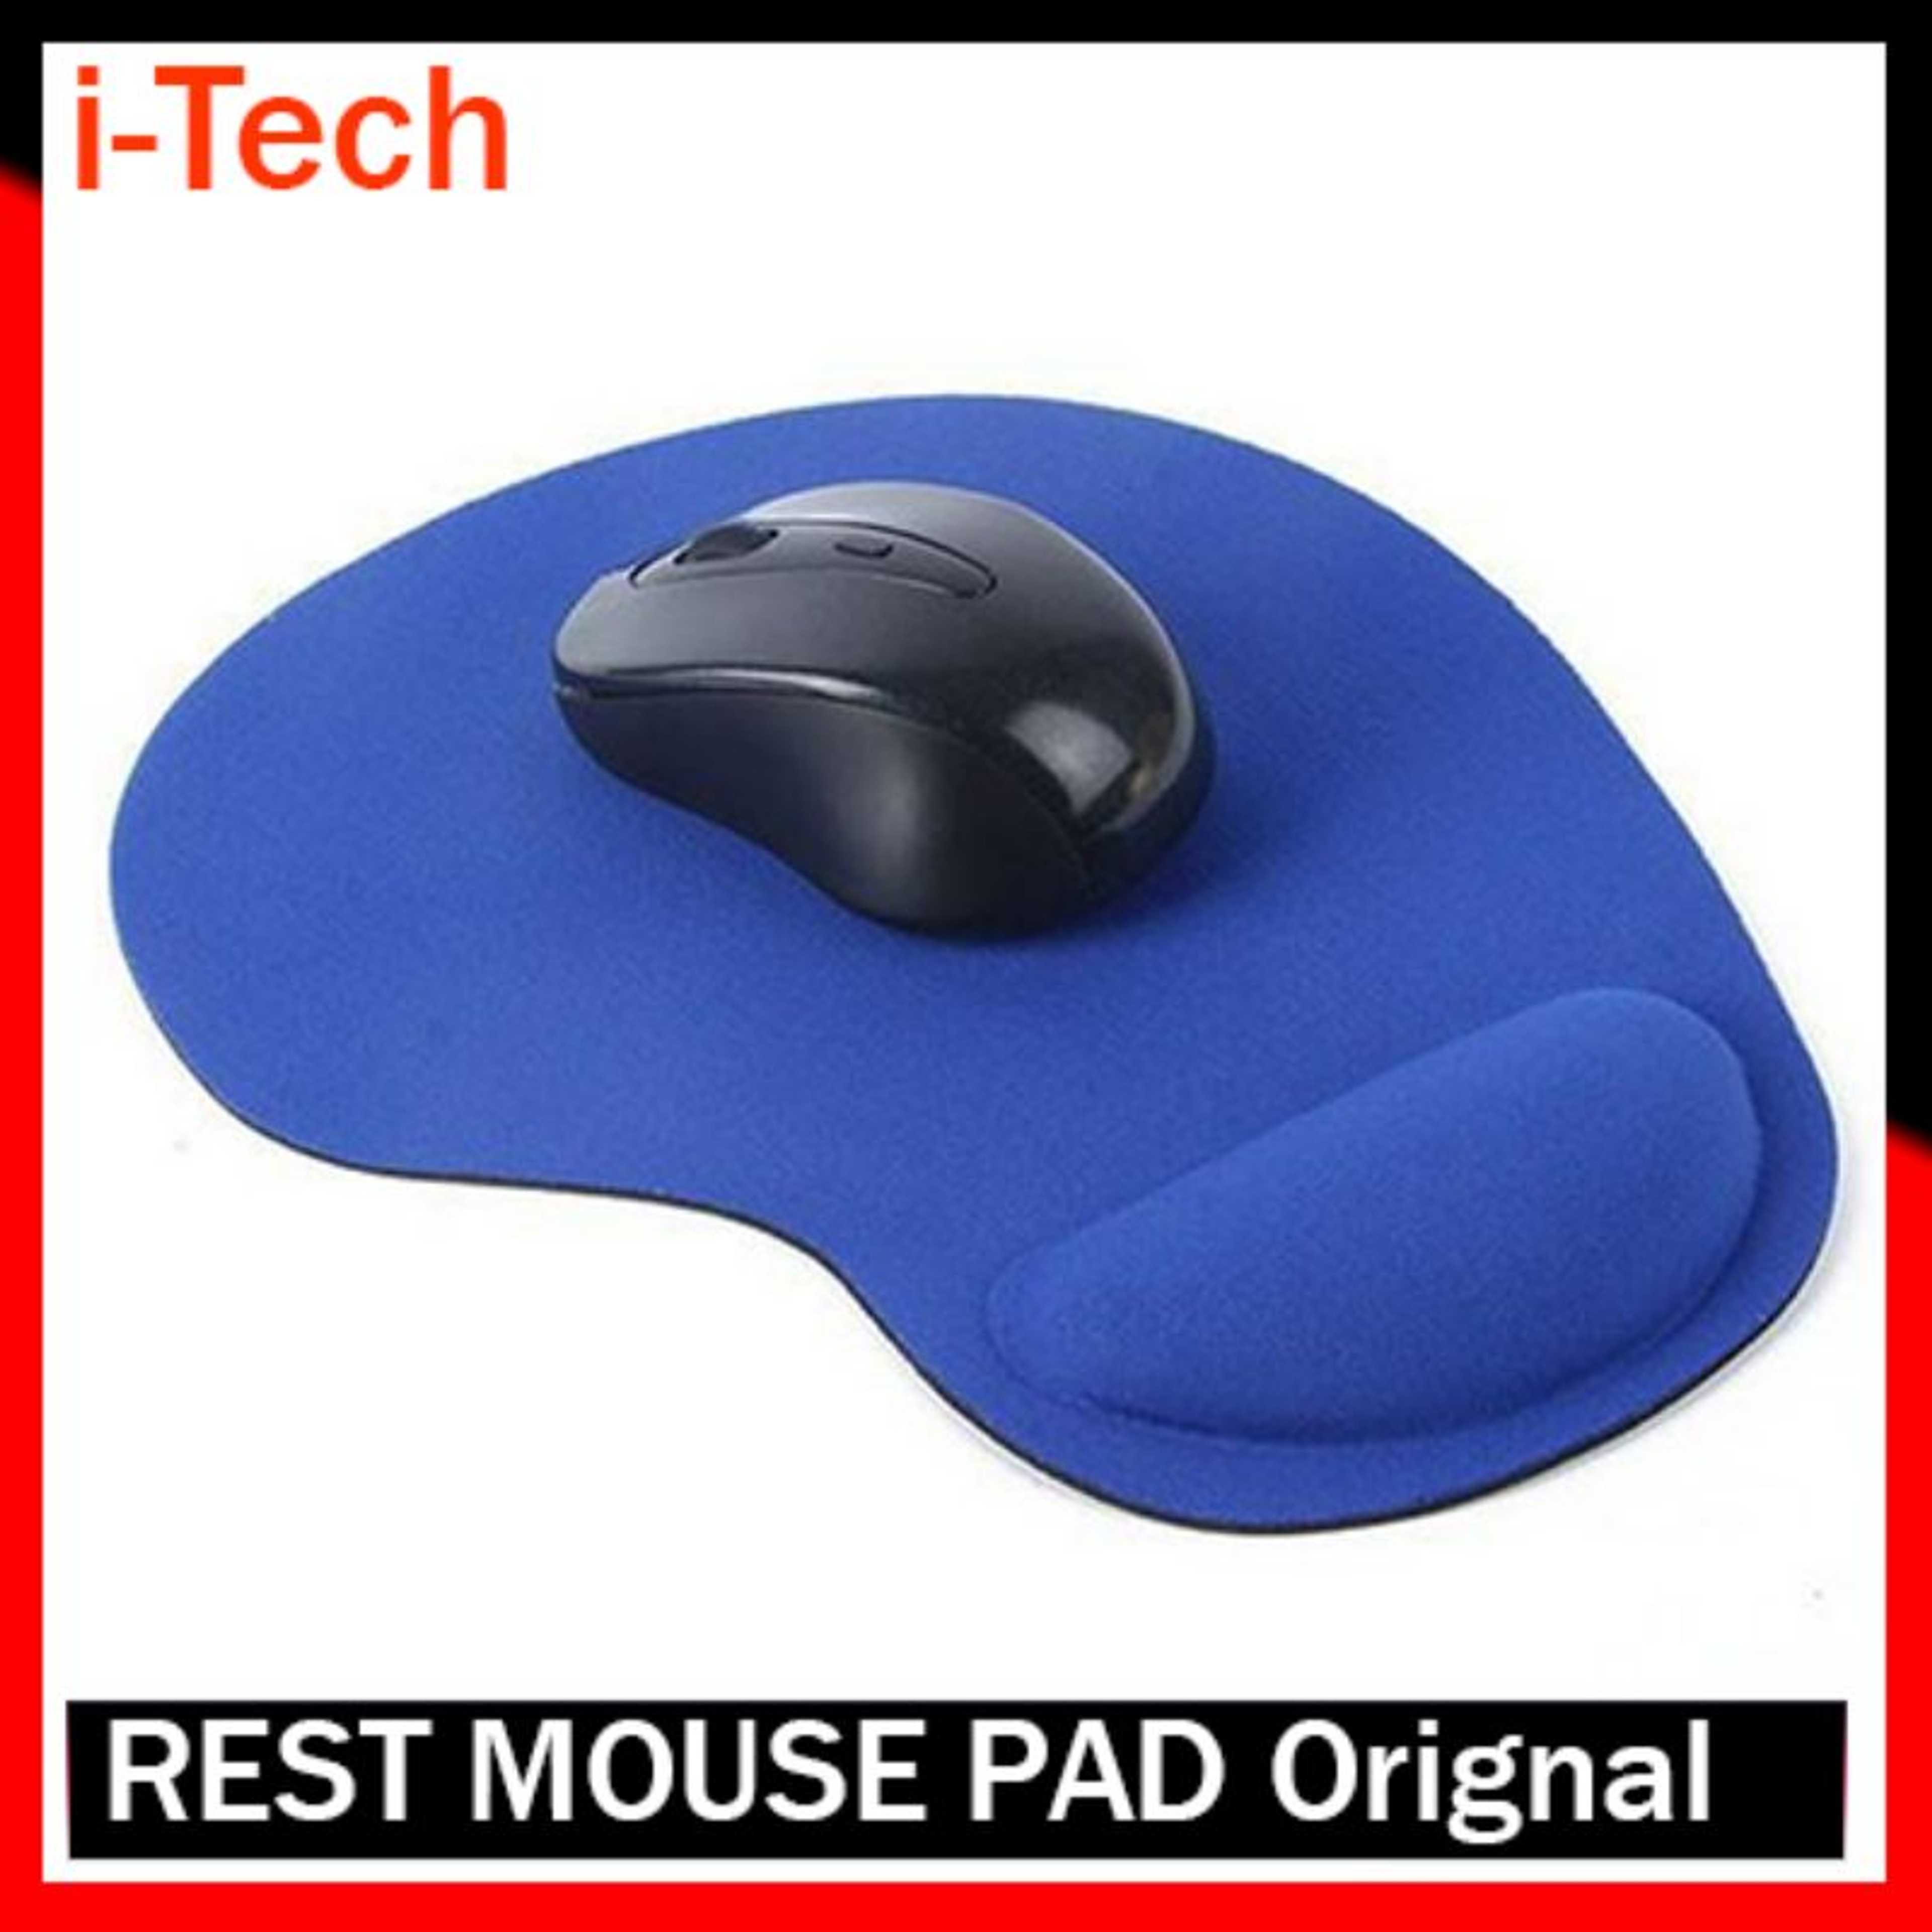 Rest Mouse Pad Orignal